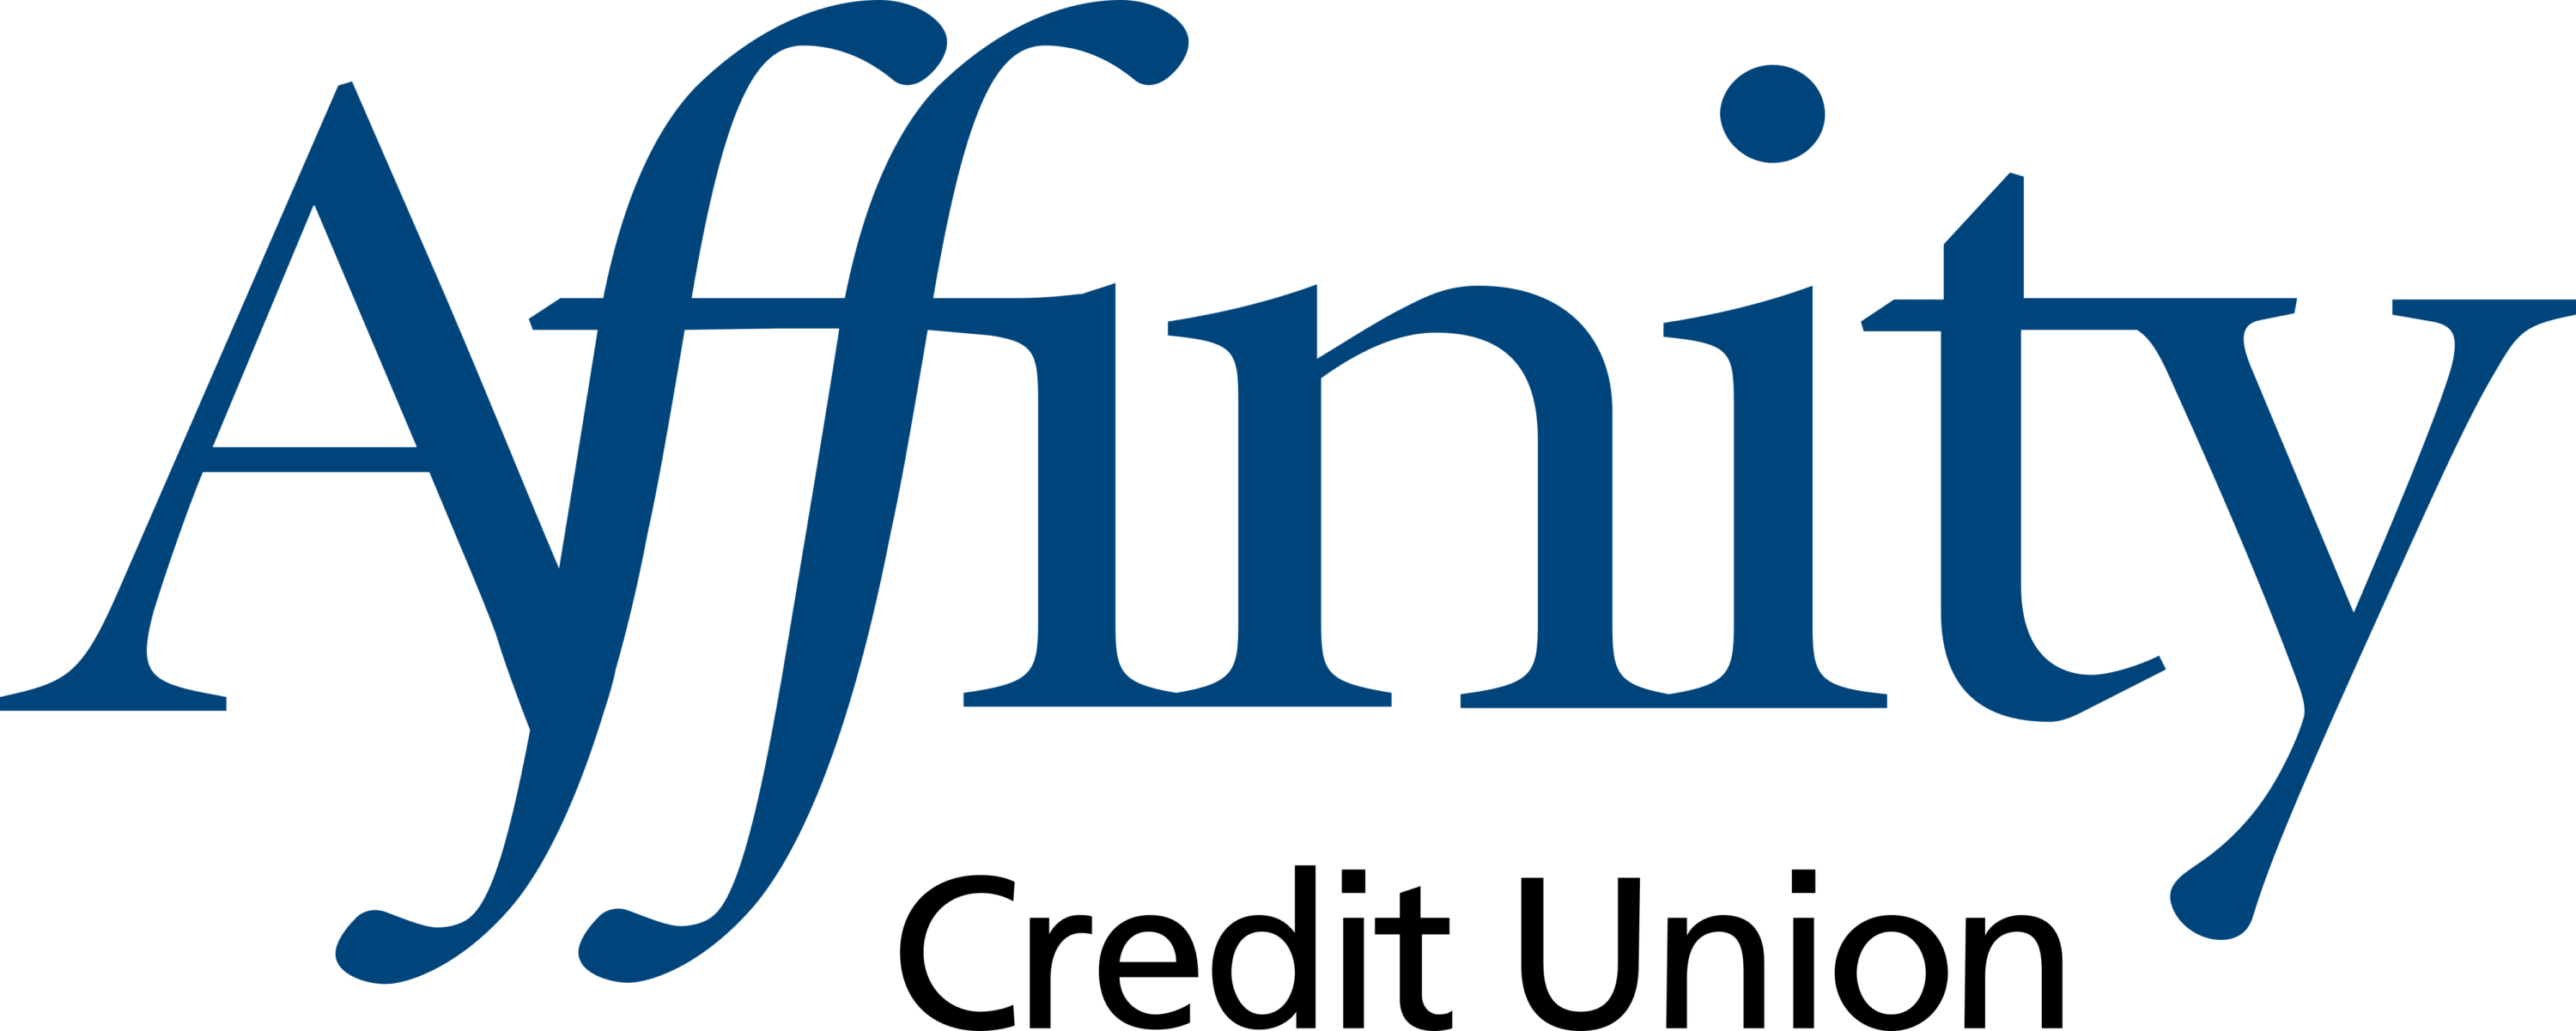 Affinity Credit Union Logo